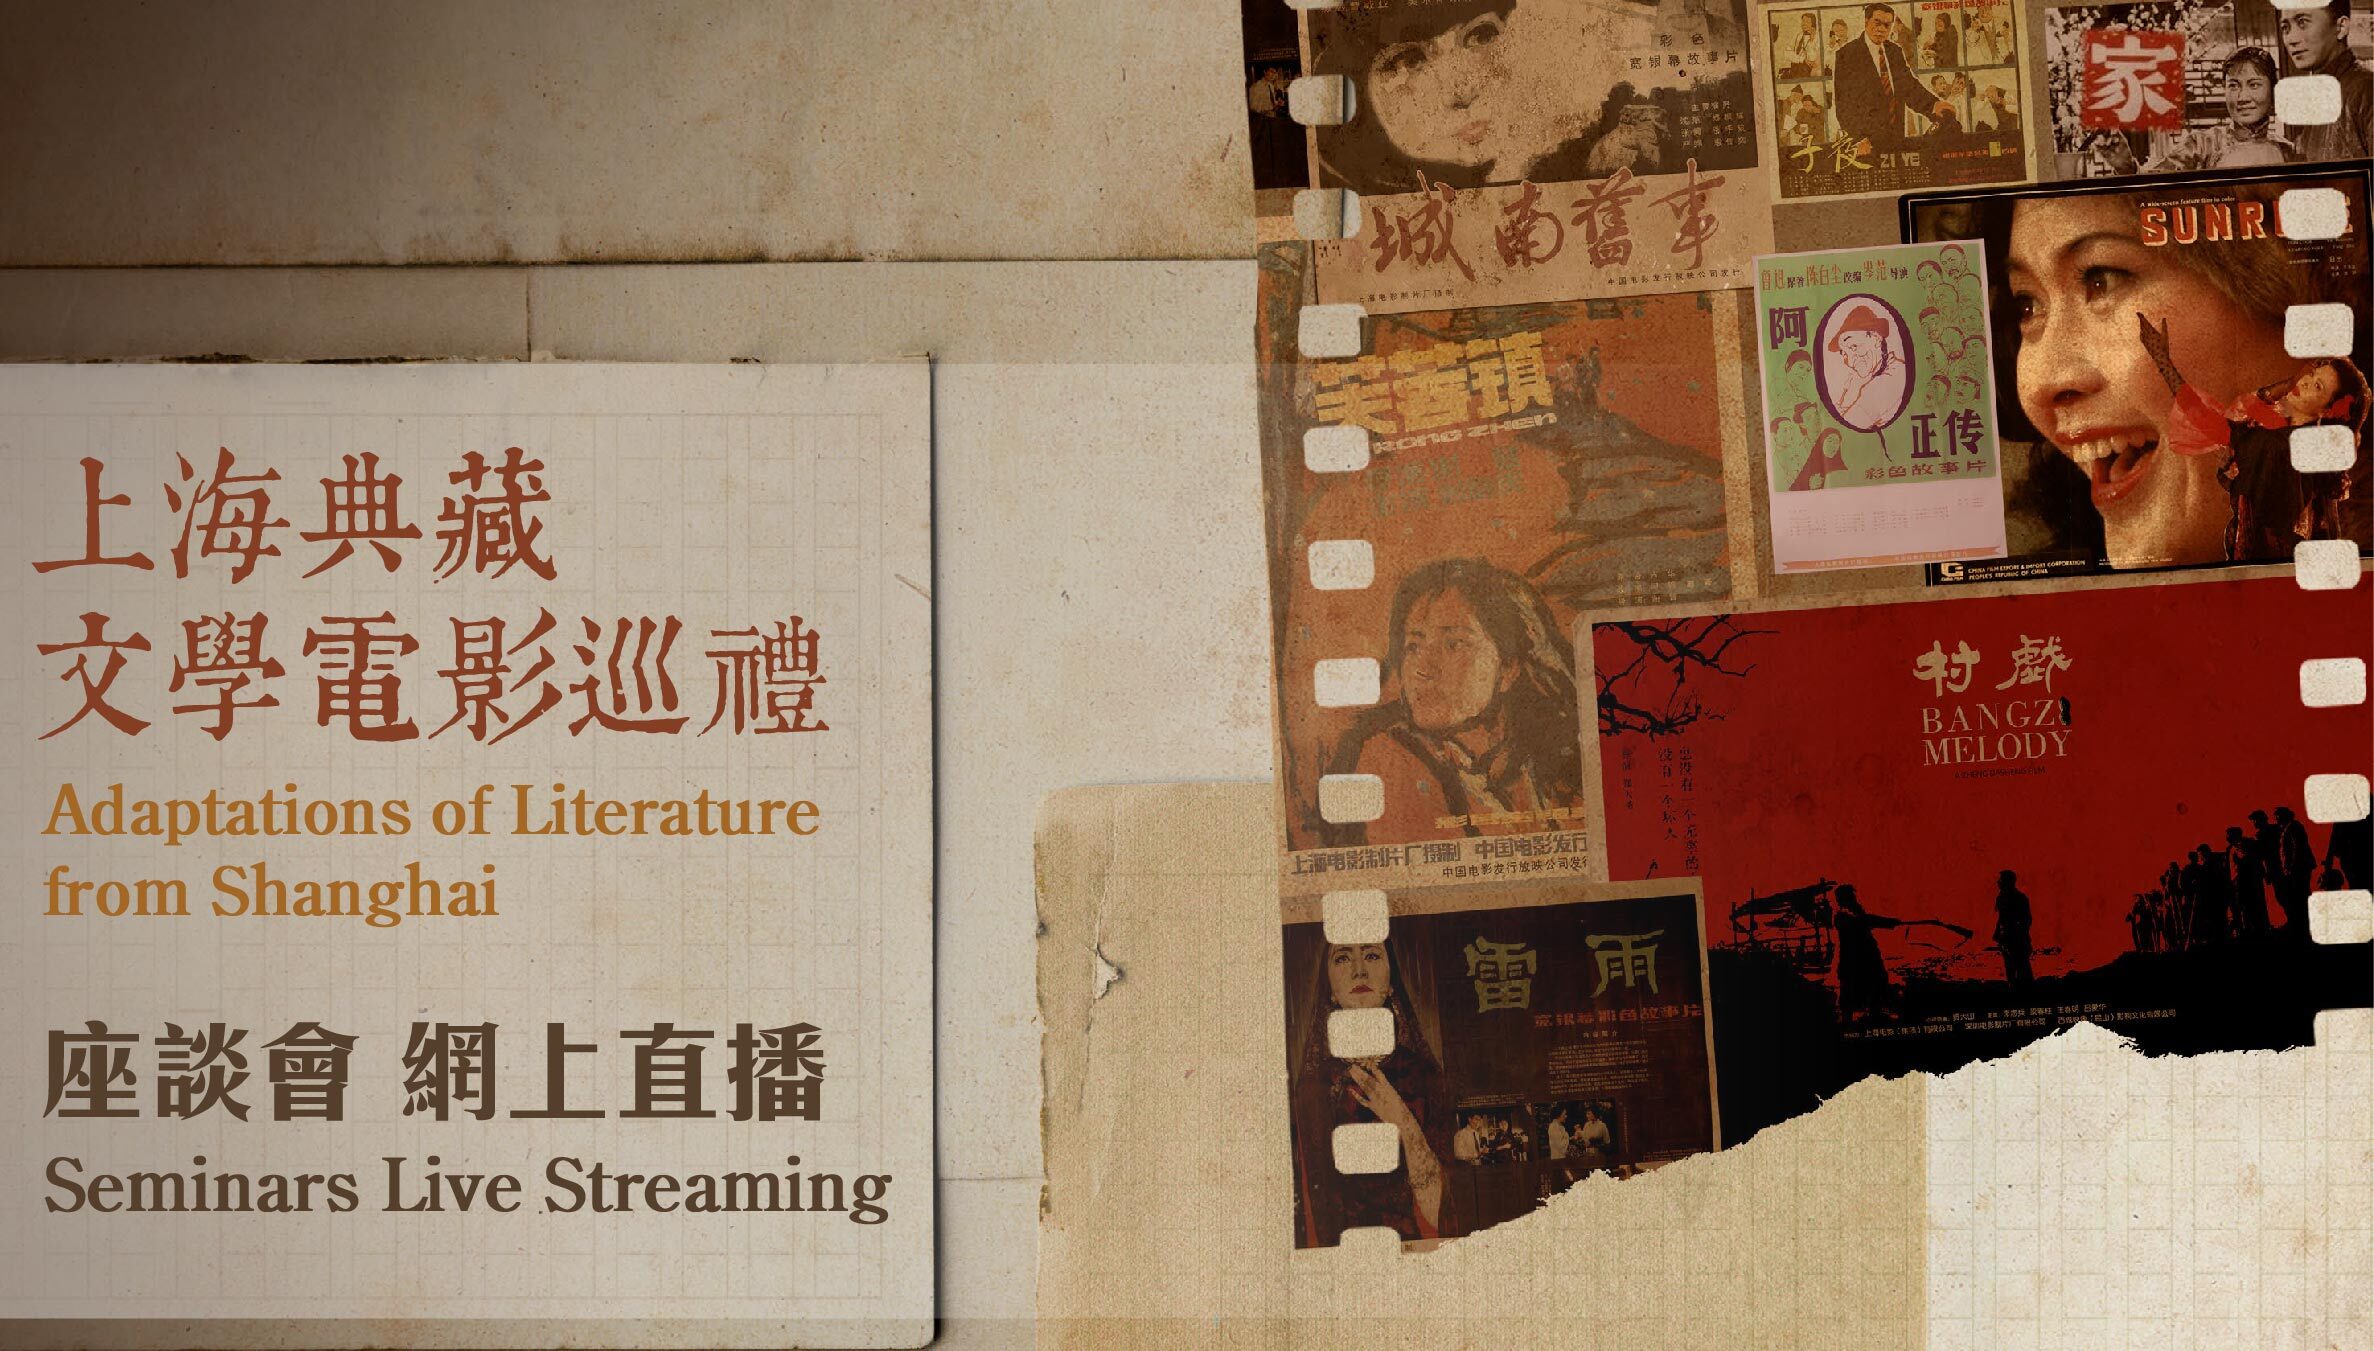 上海典藏文学电影巡礼座谈会 网上直播